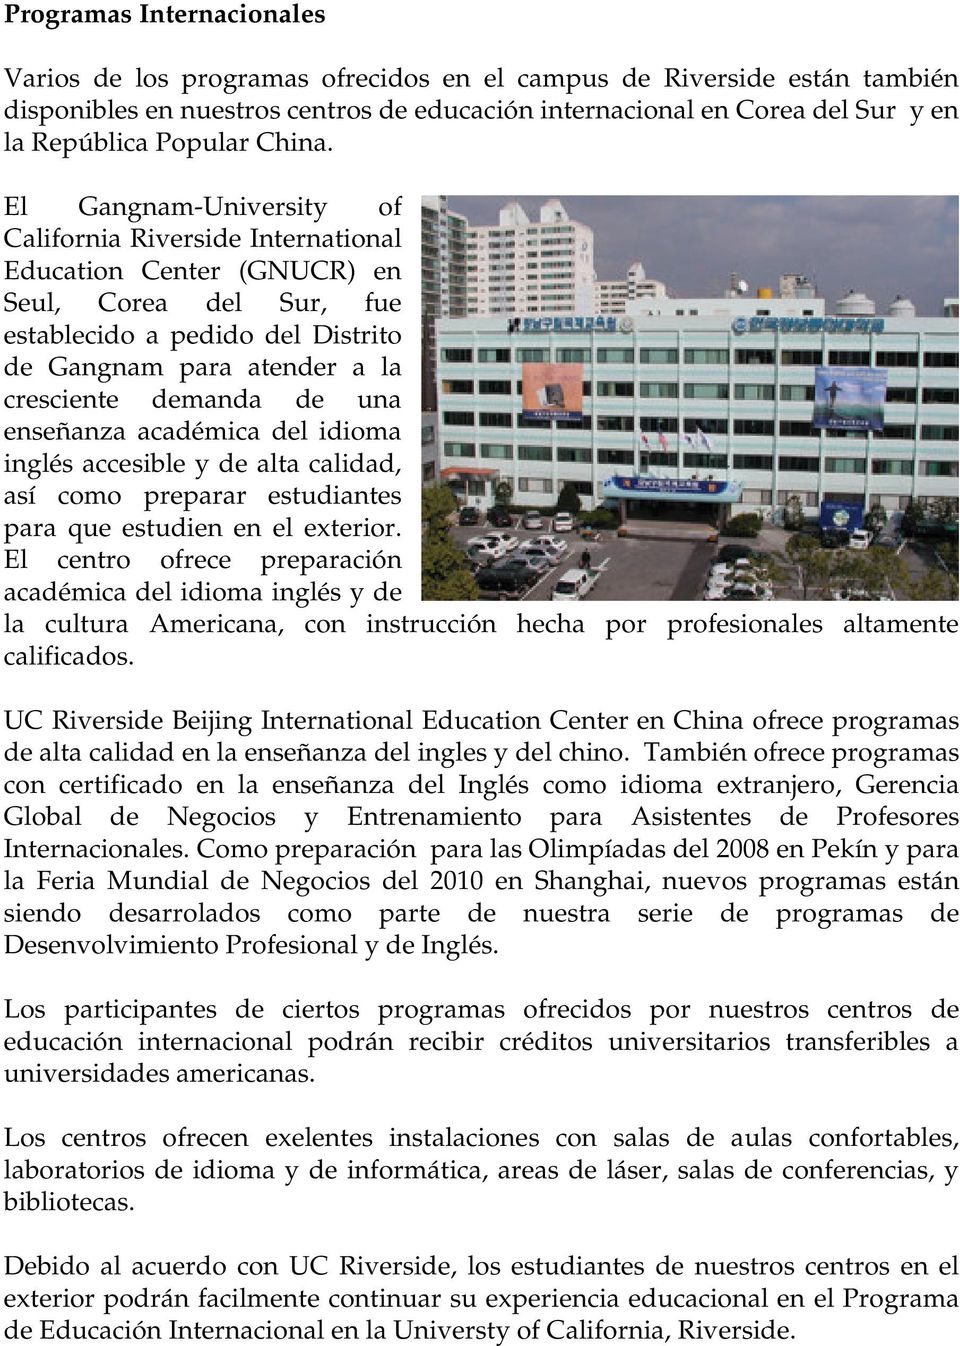 El Gangnam-University of California Riverside International Education Center (GNUCR) en Seul, Corea del Sur, fue establecido a pedido del Distrito de Gangnam para atender a la cresciente demanda de